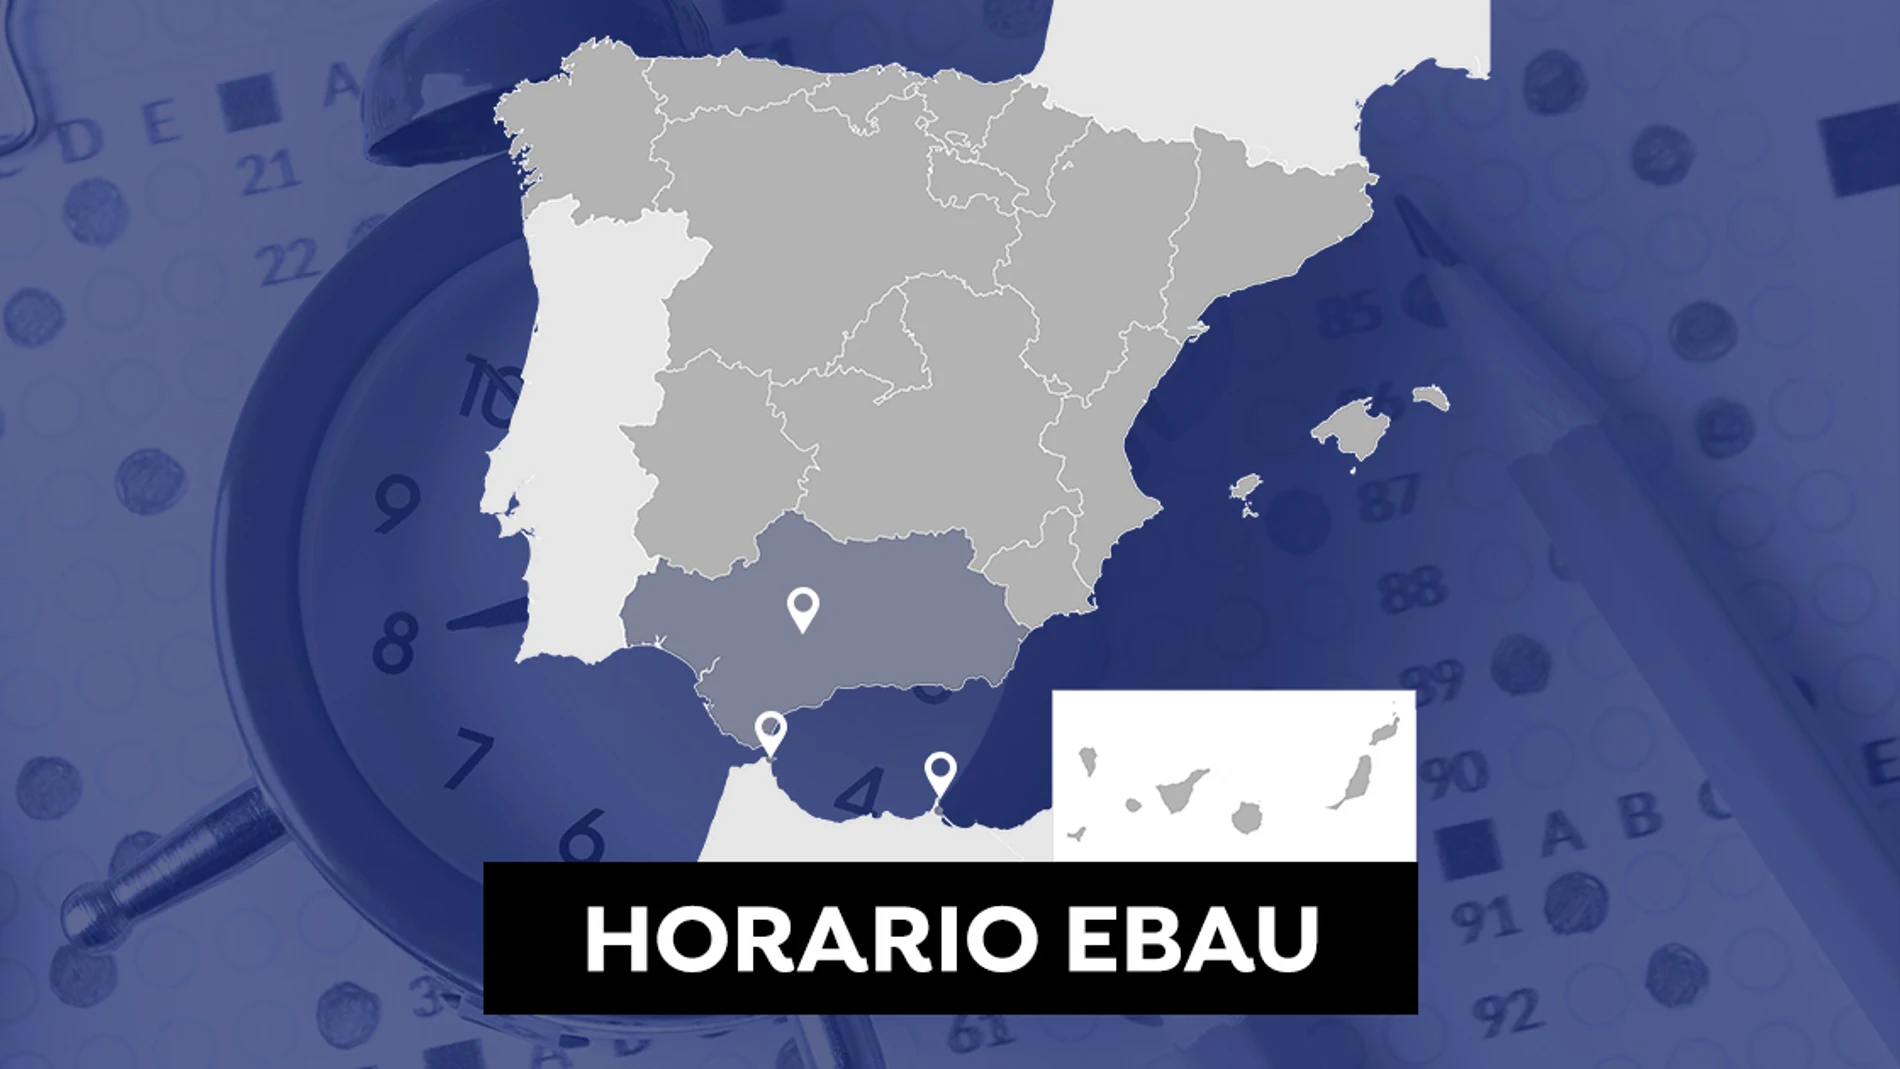 Horario de la Evau en Andalucía, Ceuta y Melilla y cuándo salen las notas de selectividad en 2021